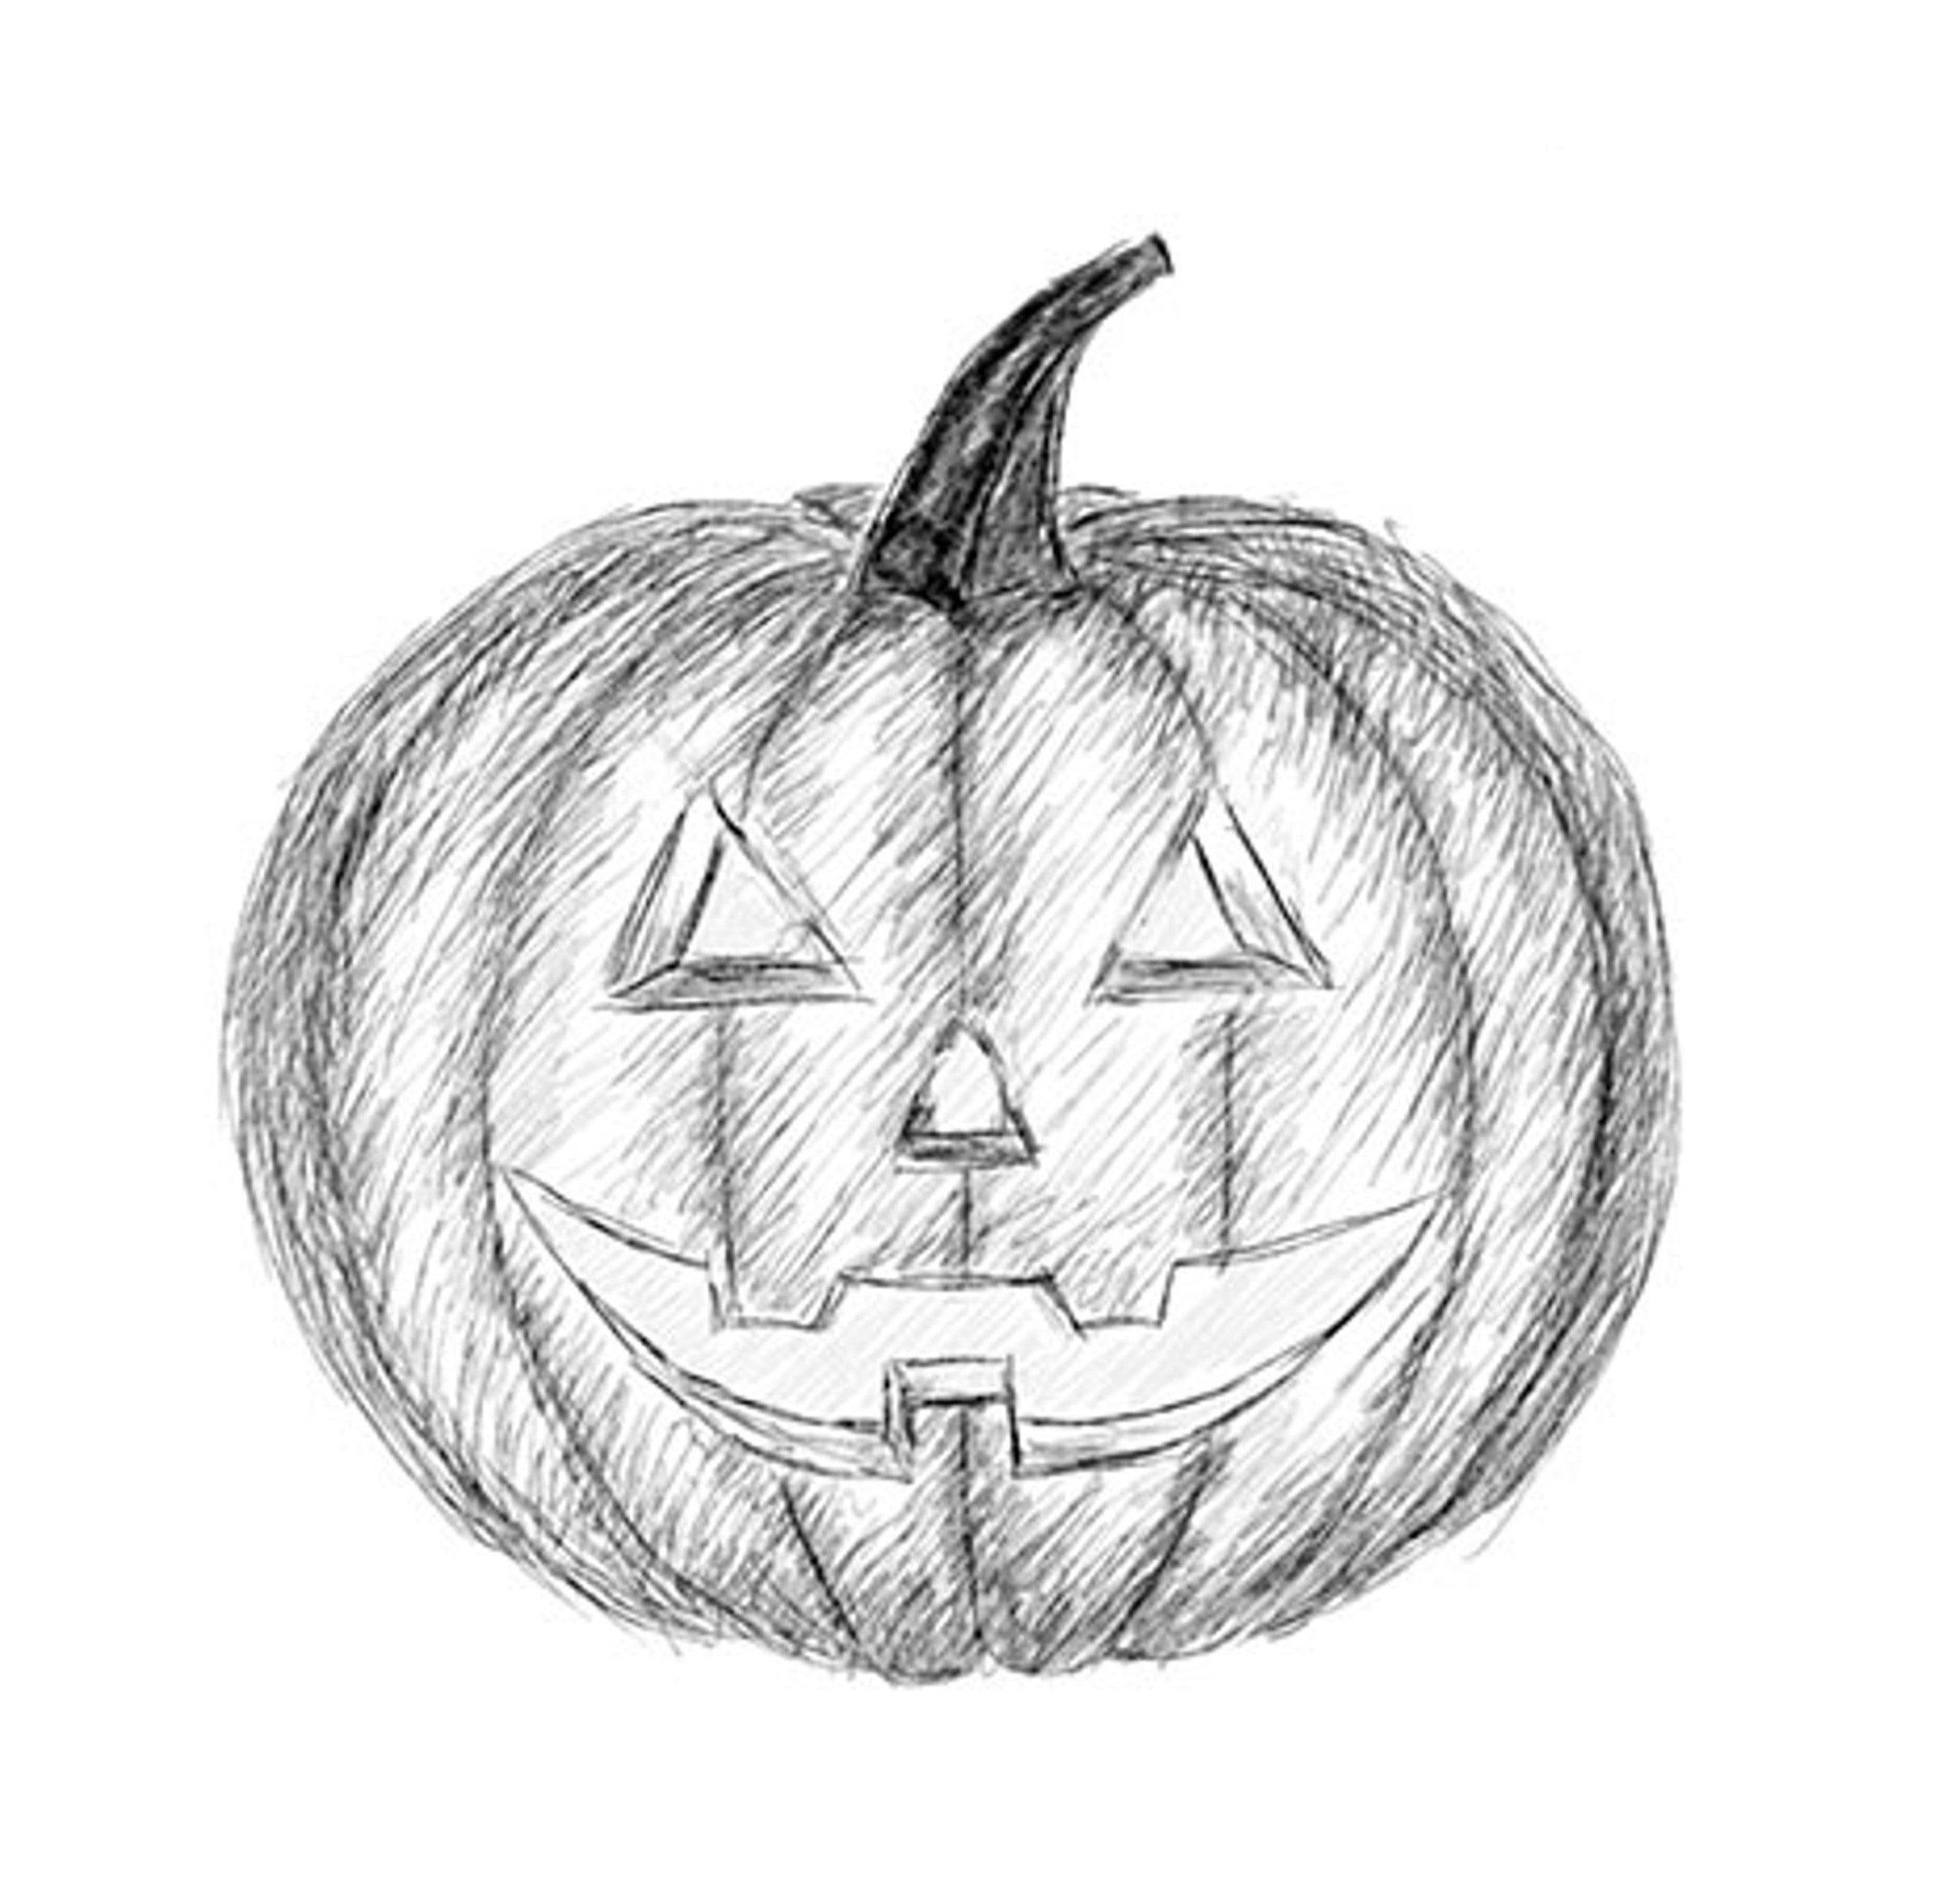 Рисунок тыквы на Хэллоуин для срисовки